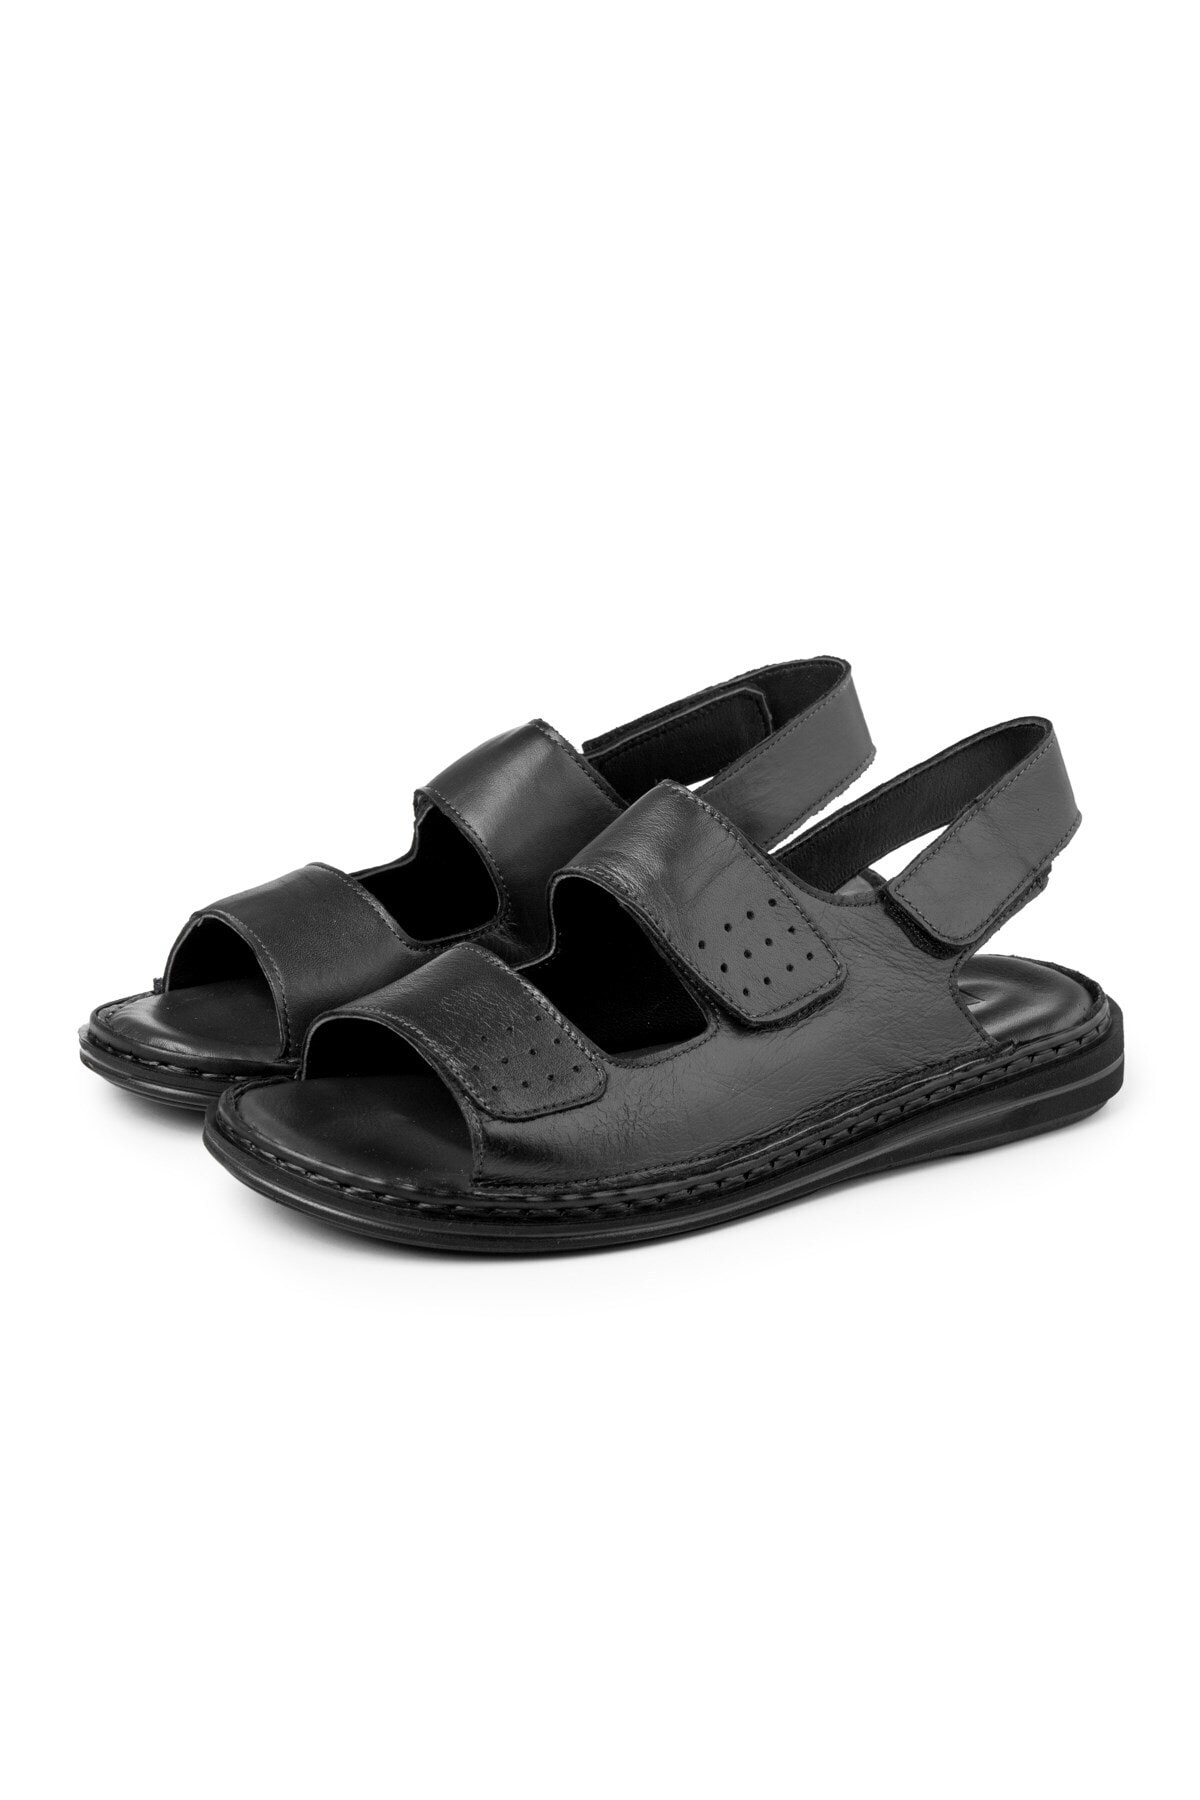 Ducavelli Luas Genuine Leather Men's Sandals, Genuine Leather Sandals, Orthopedic Sole Sandals